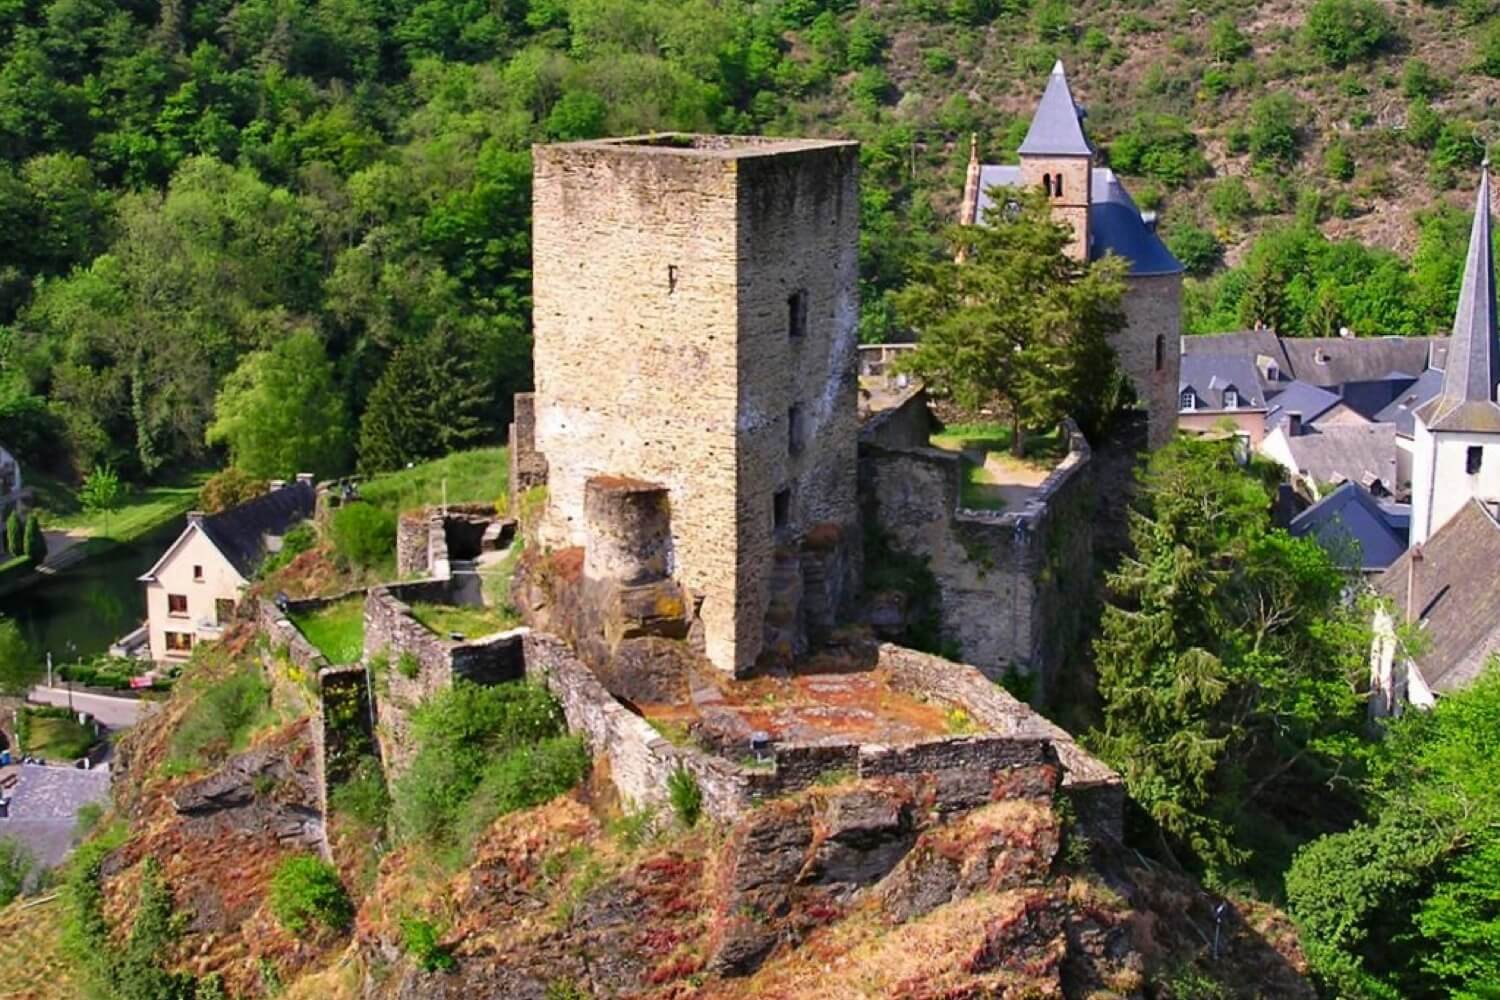 Esch-sur-Sûre Castle